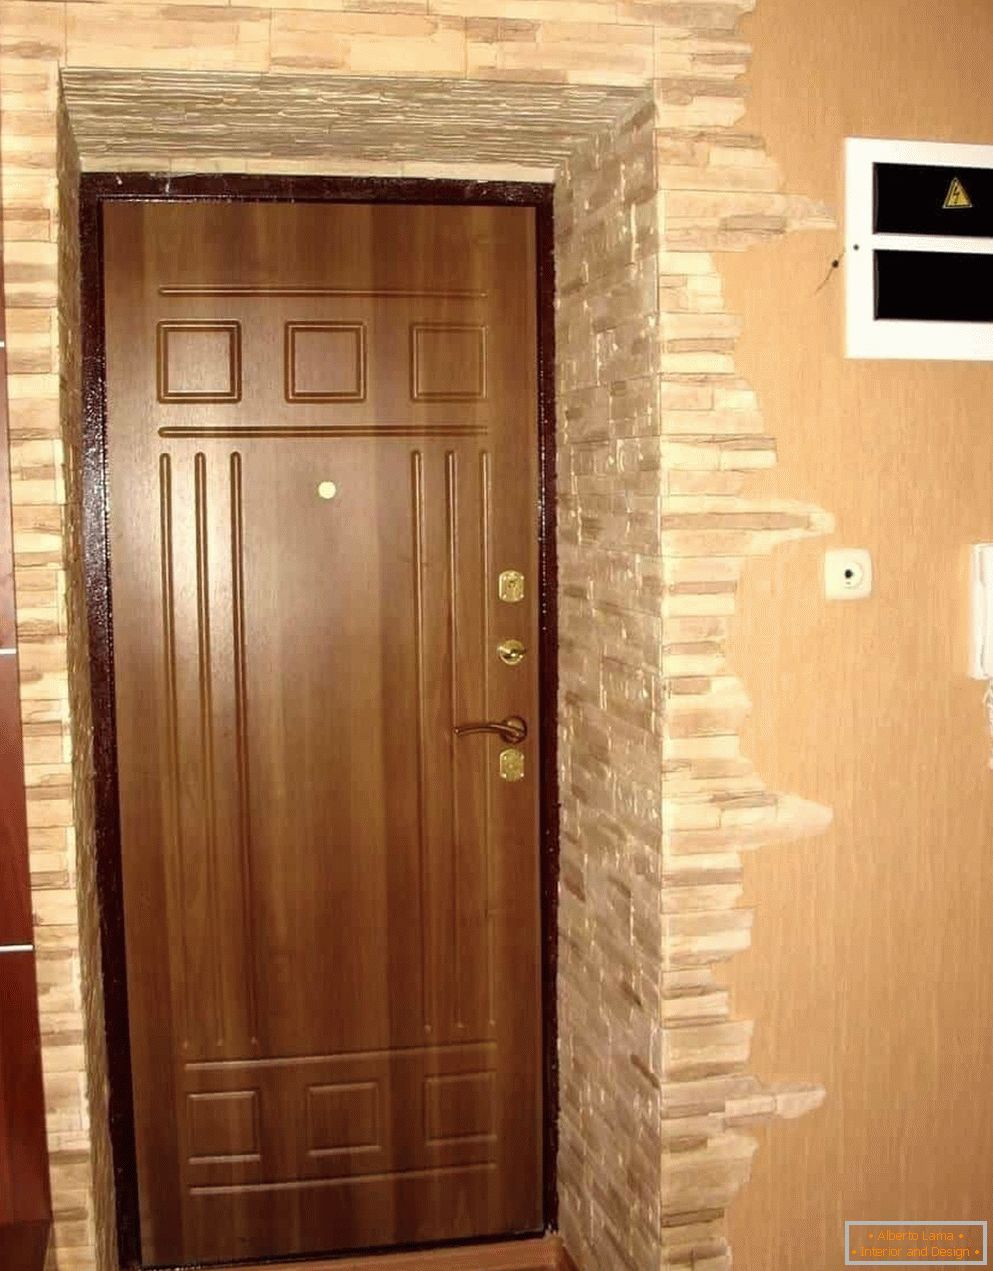 Papéis de parede e pedra no corredor